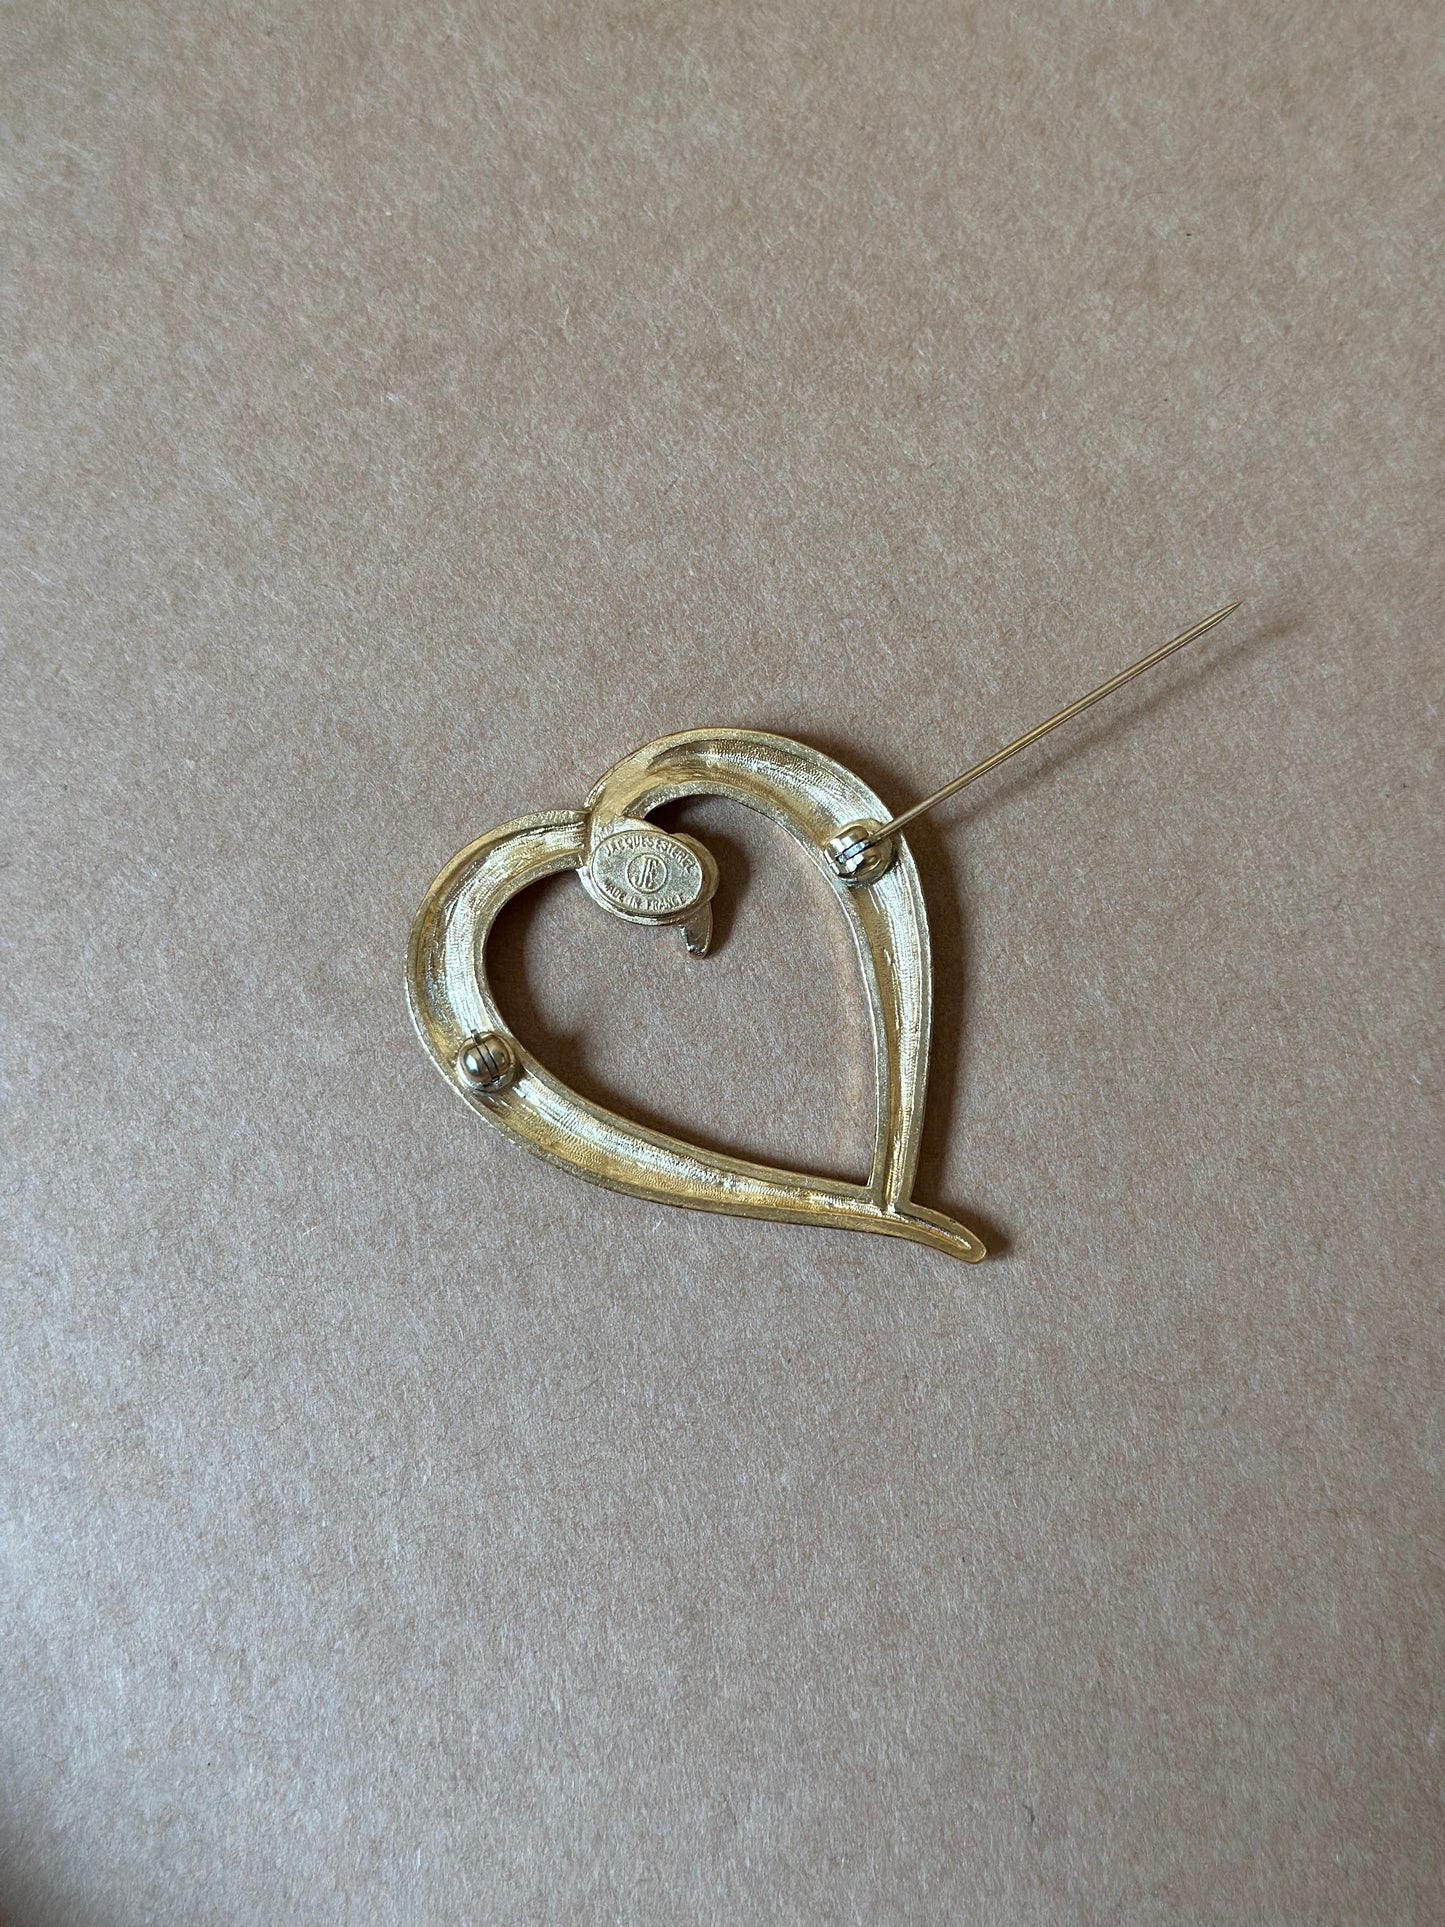 Vintage Heart-Shaped Jacques Esterel Paris Brooch